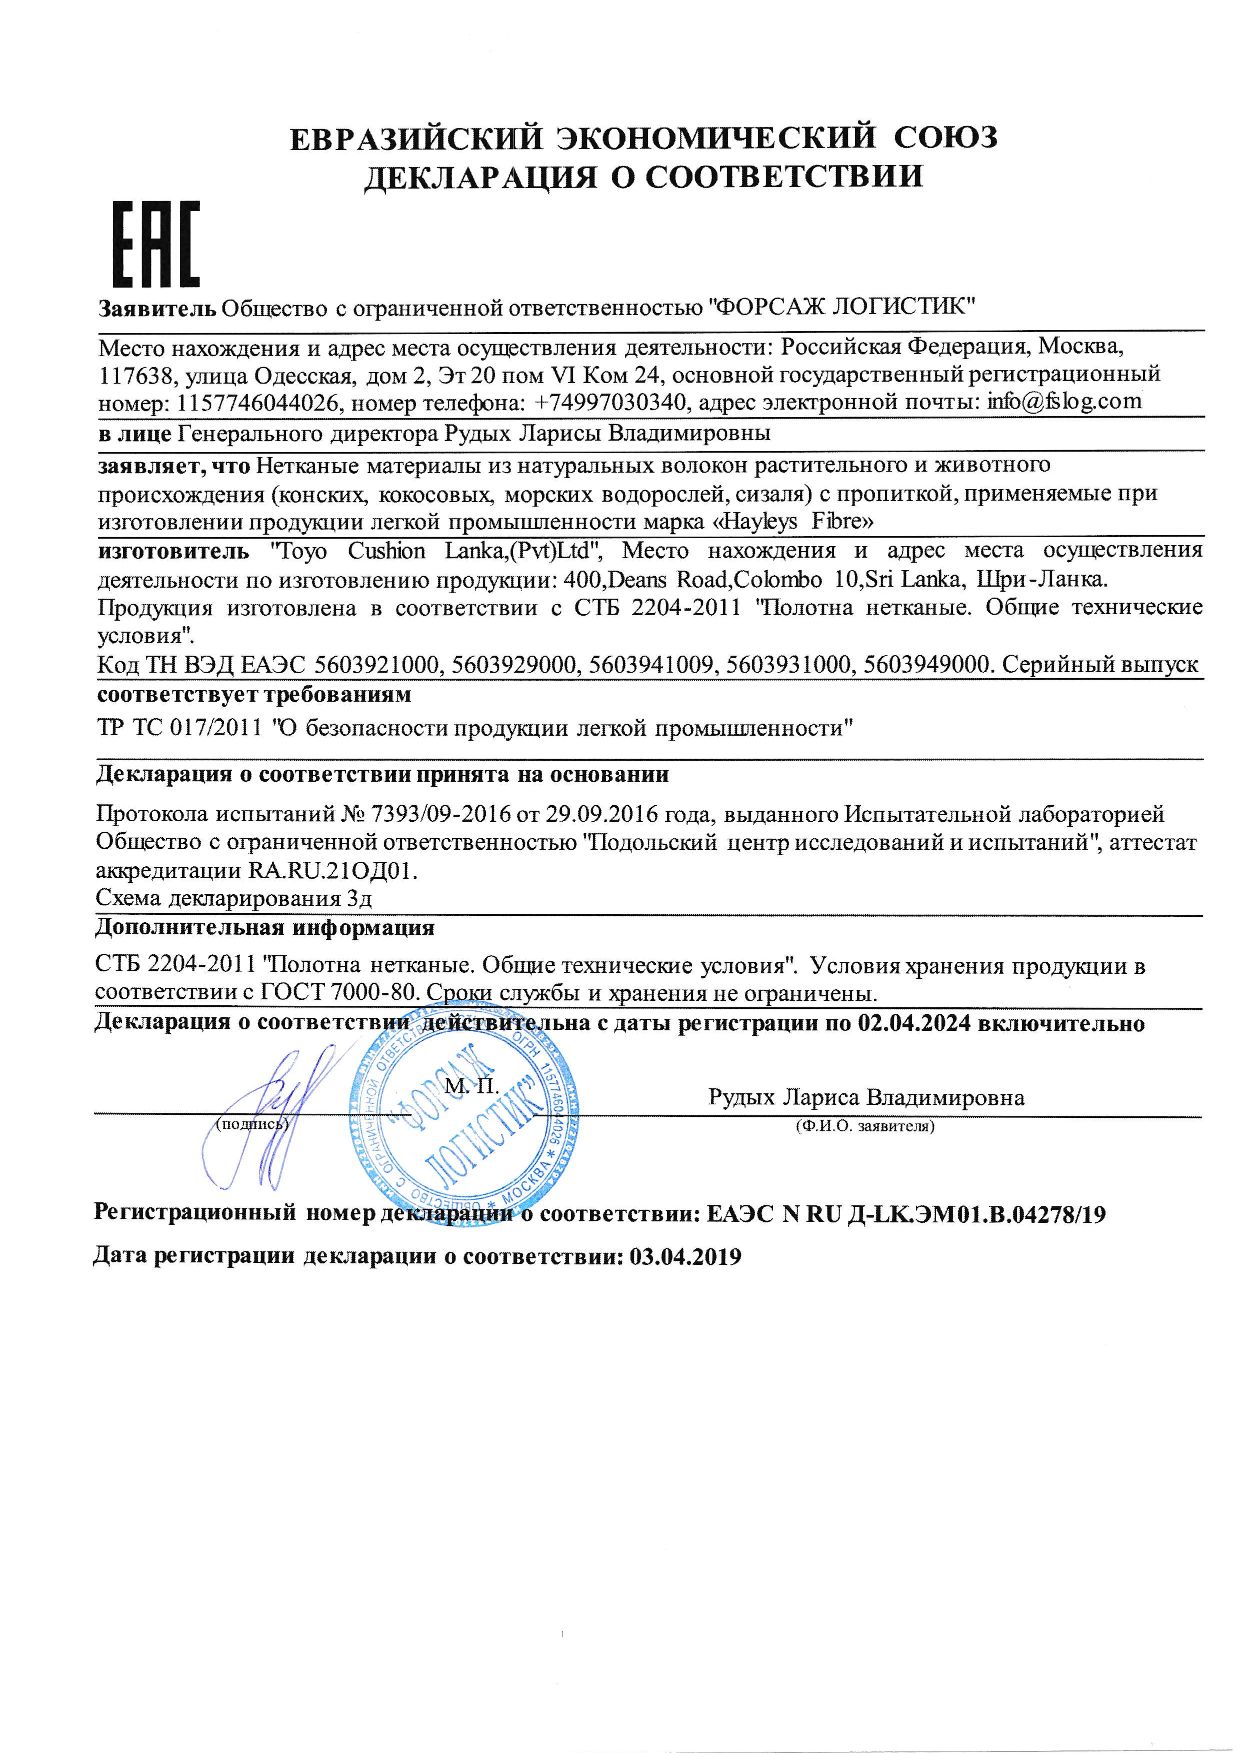 Сертификат ЕАЭС 2909